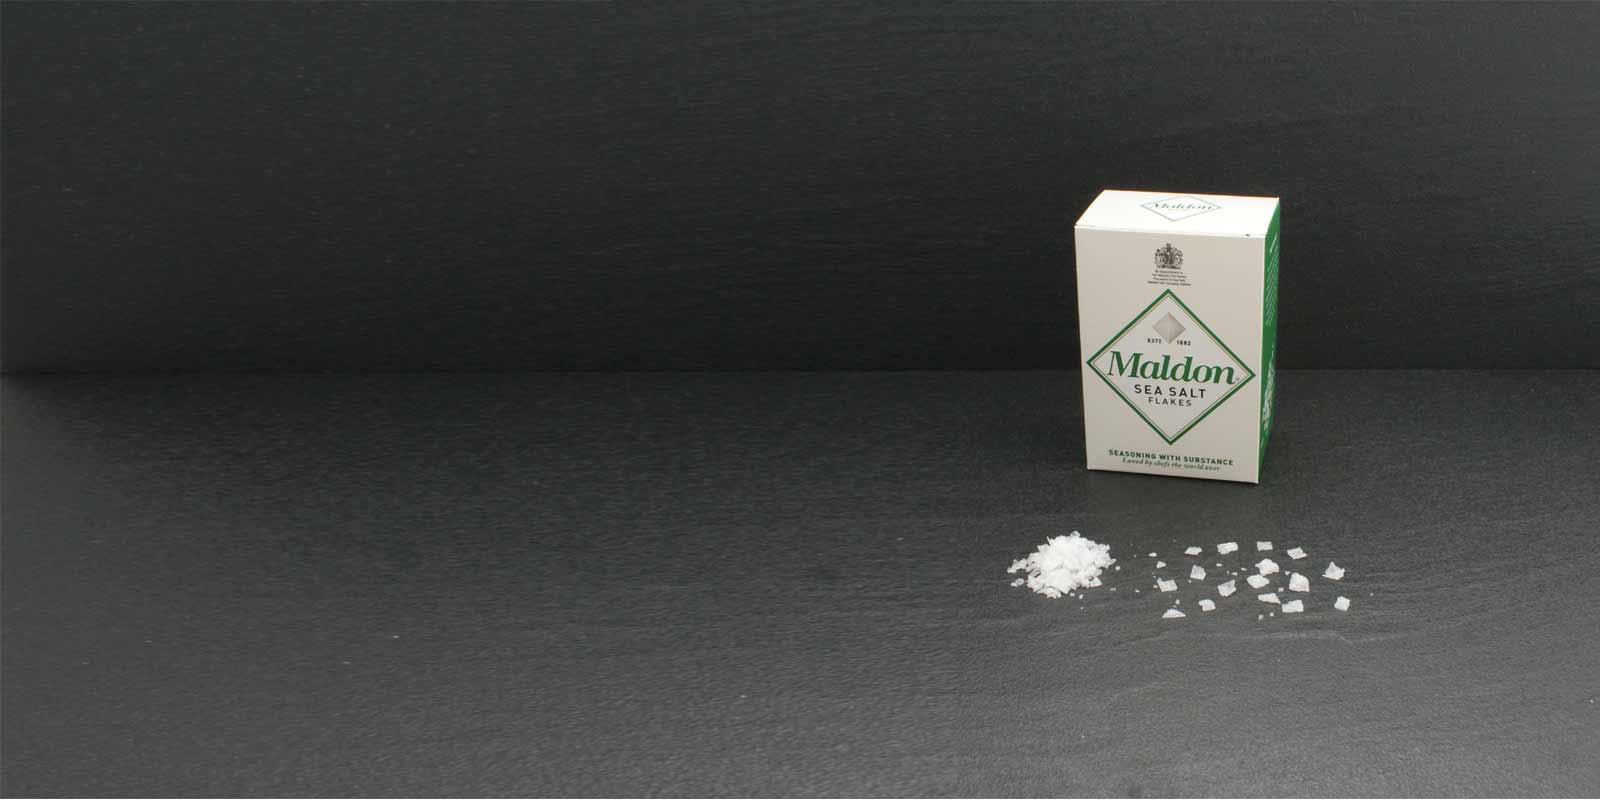 Maldon Zeezoutvlokken Kristallen De karakteristieke, piramidevormige zoutkristallen zijn extreem dun en kunnen gemakkelijk tussen de vingers worden gewreven om op smaak te brengen. Het waardevolle zout wordt gewonnen door de Maldon Sea Salt Company, het enige zoutmijnbedrijf in Engeland. Het kleine familiebedrijf verwerkt en verkoopt het zout al sinds 1882. Maldon Zeezout is slechts in beperkte hoeveelheden verkrijgbaar.